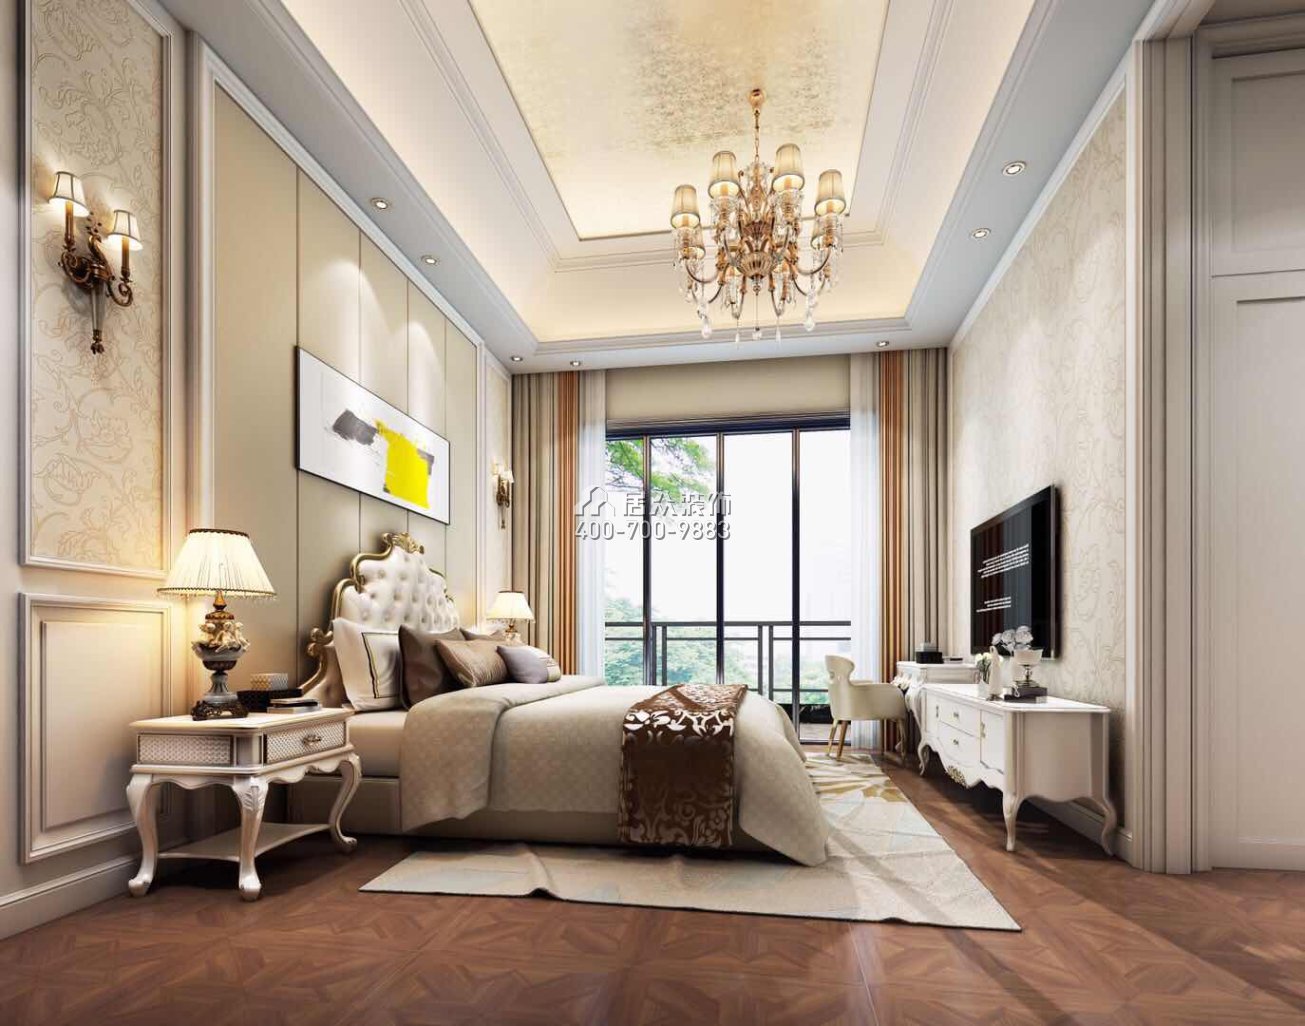 新世纪上河居360平方米欧式风格复式户型卧室装修效果图